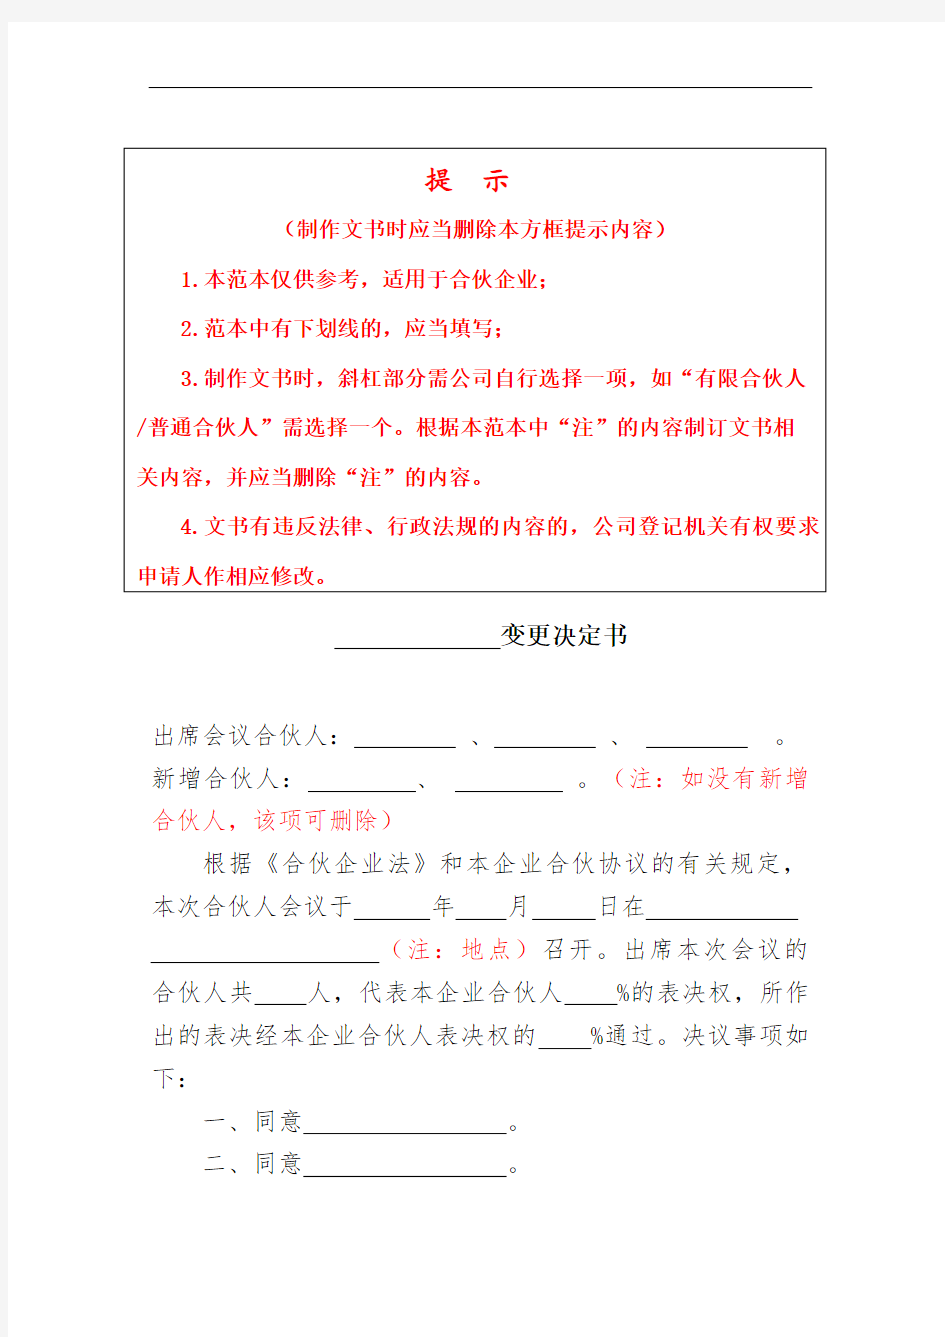 合伙企业变更决定书-广州市工商局